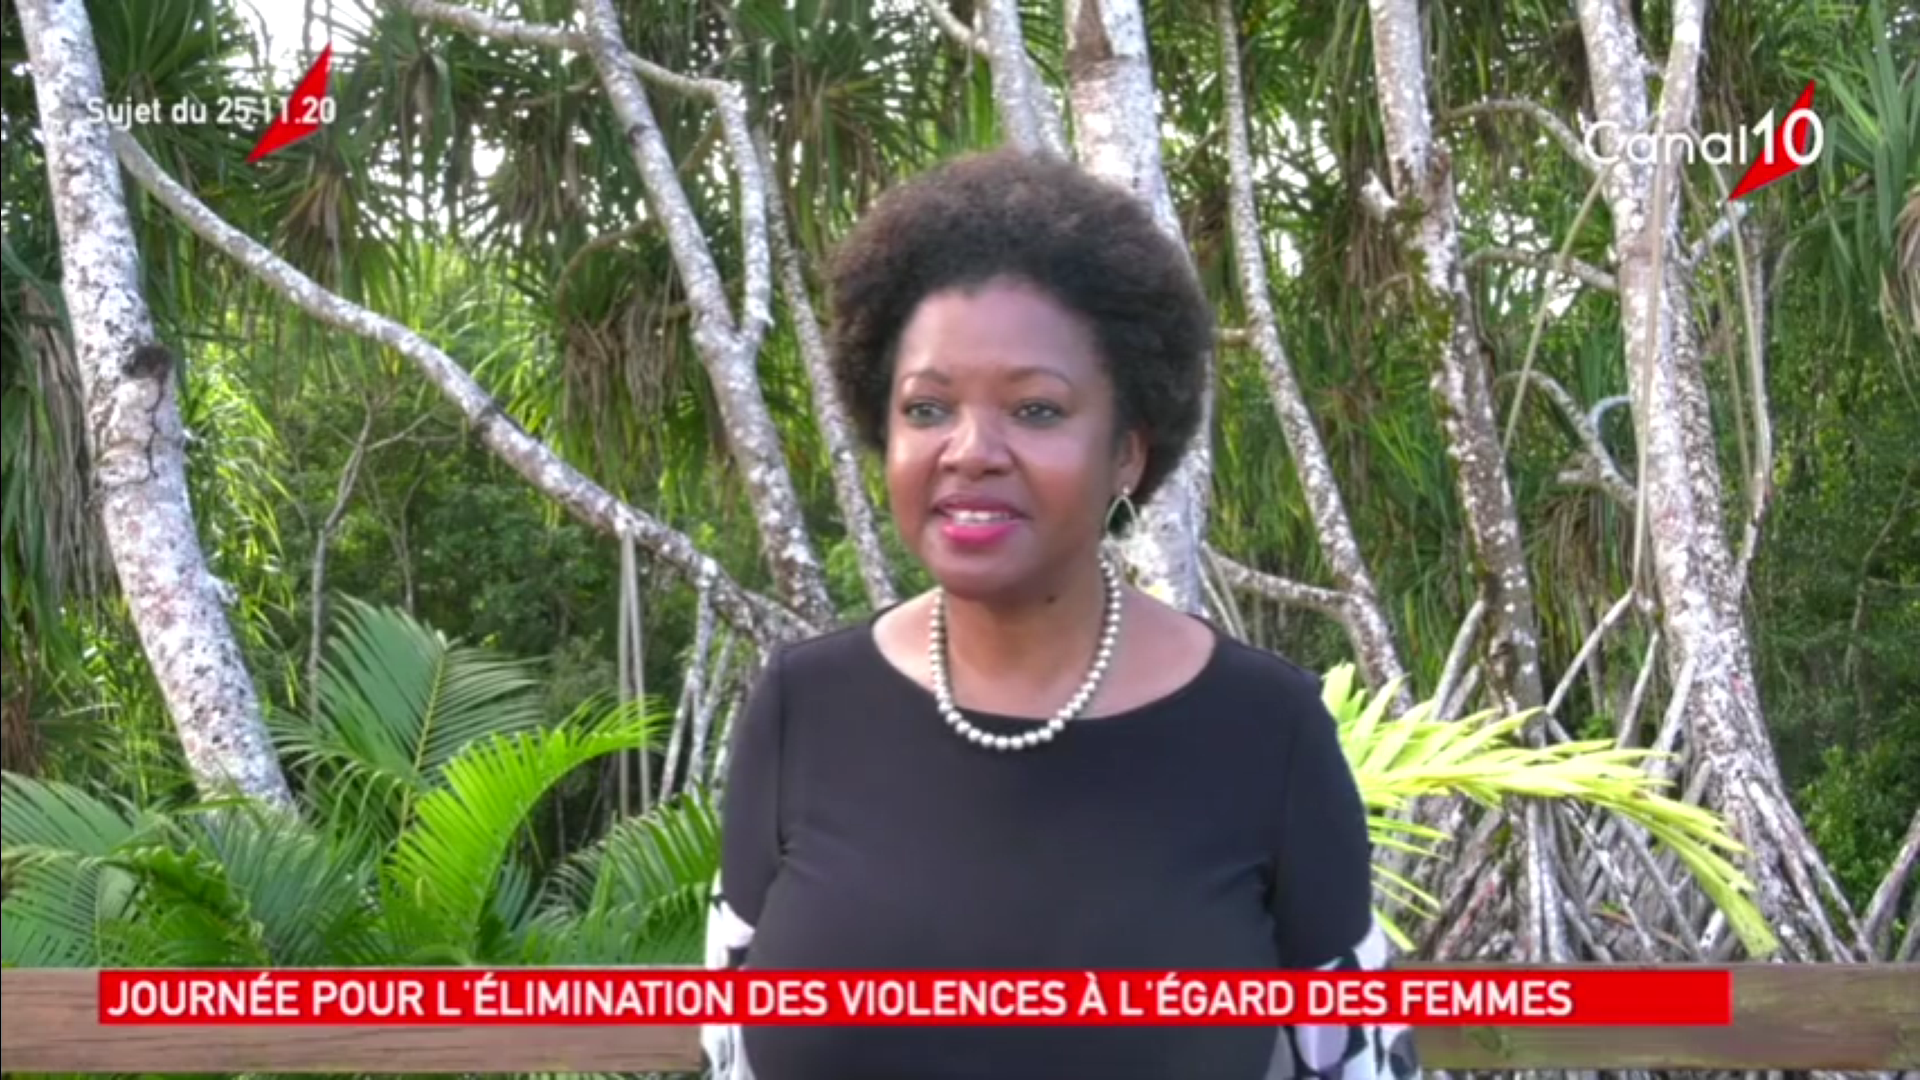 [Vidéo]Onews Guadeloupe. Le Jt de Canal 10.